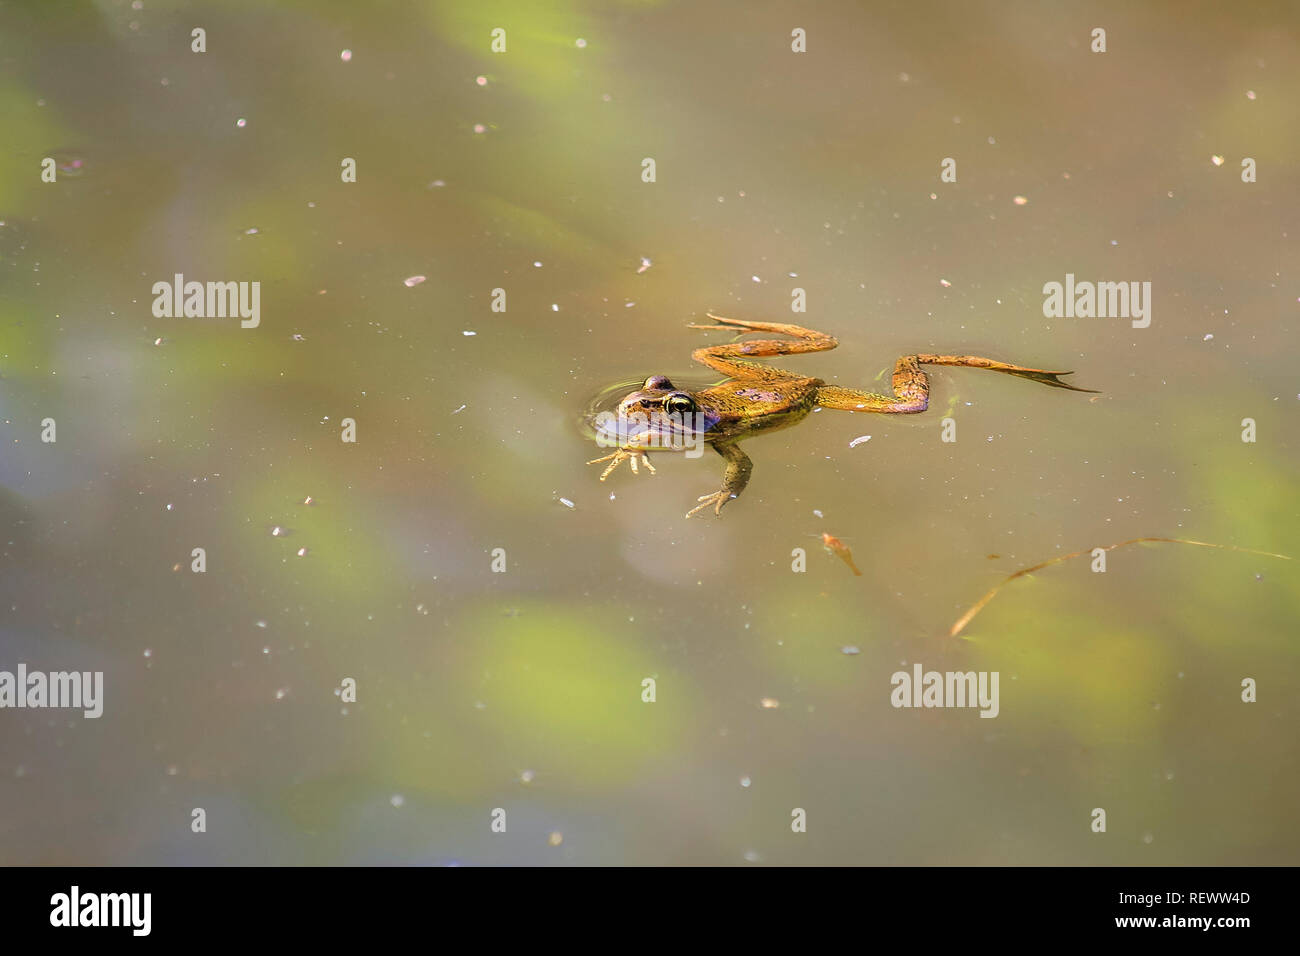 Eine Nördliche red-legged Frog schwimmt langsam auf der Oberfläche eines Teiches, Erstellen von kleinen kreisförmigen Wellen, mit einem prallen Auge im Wasser spiegelt. Stockfoto